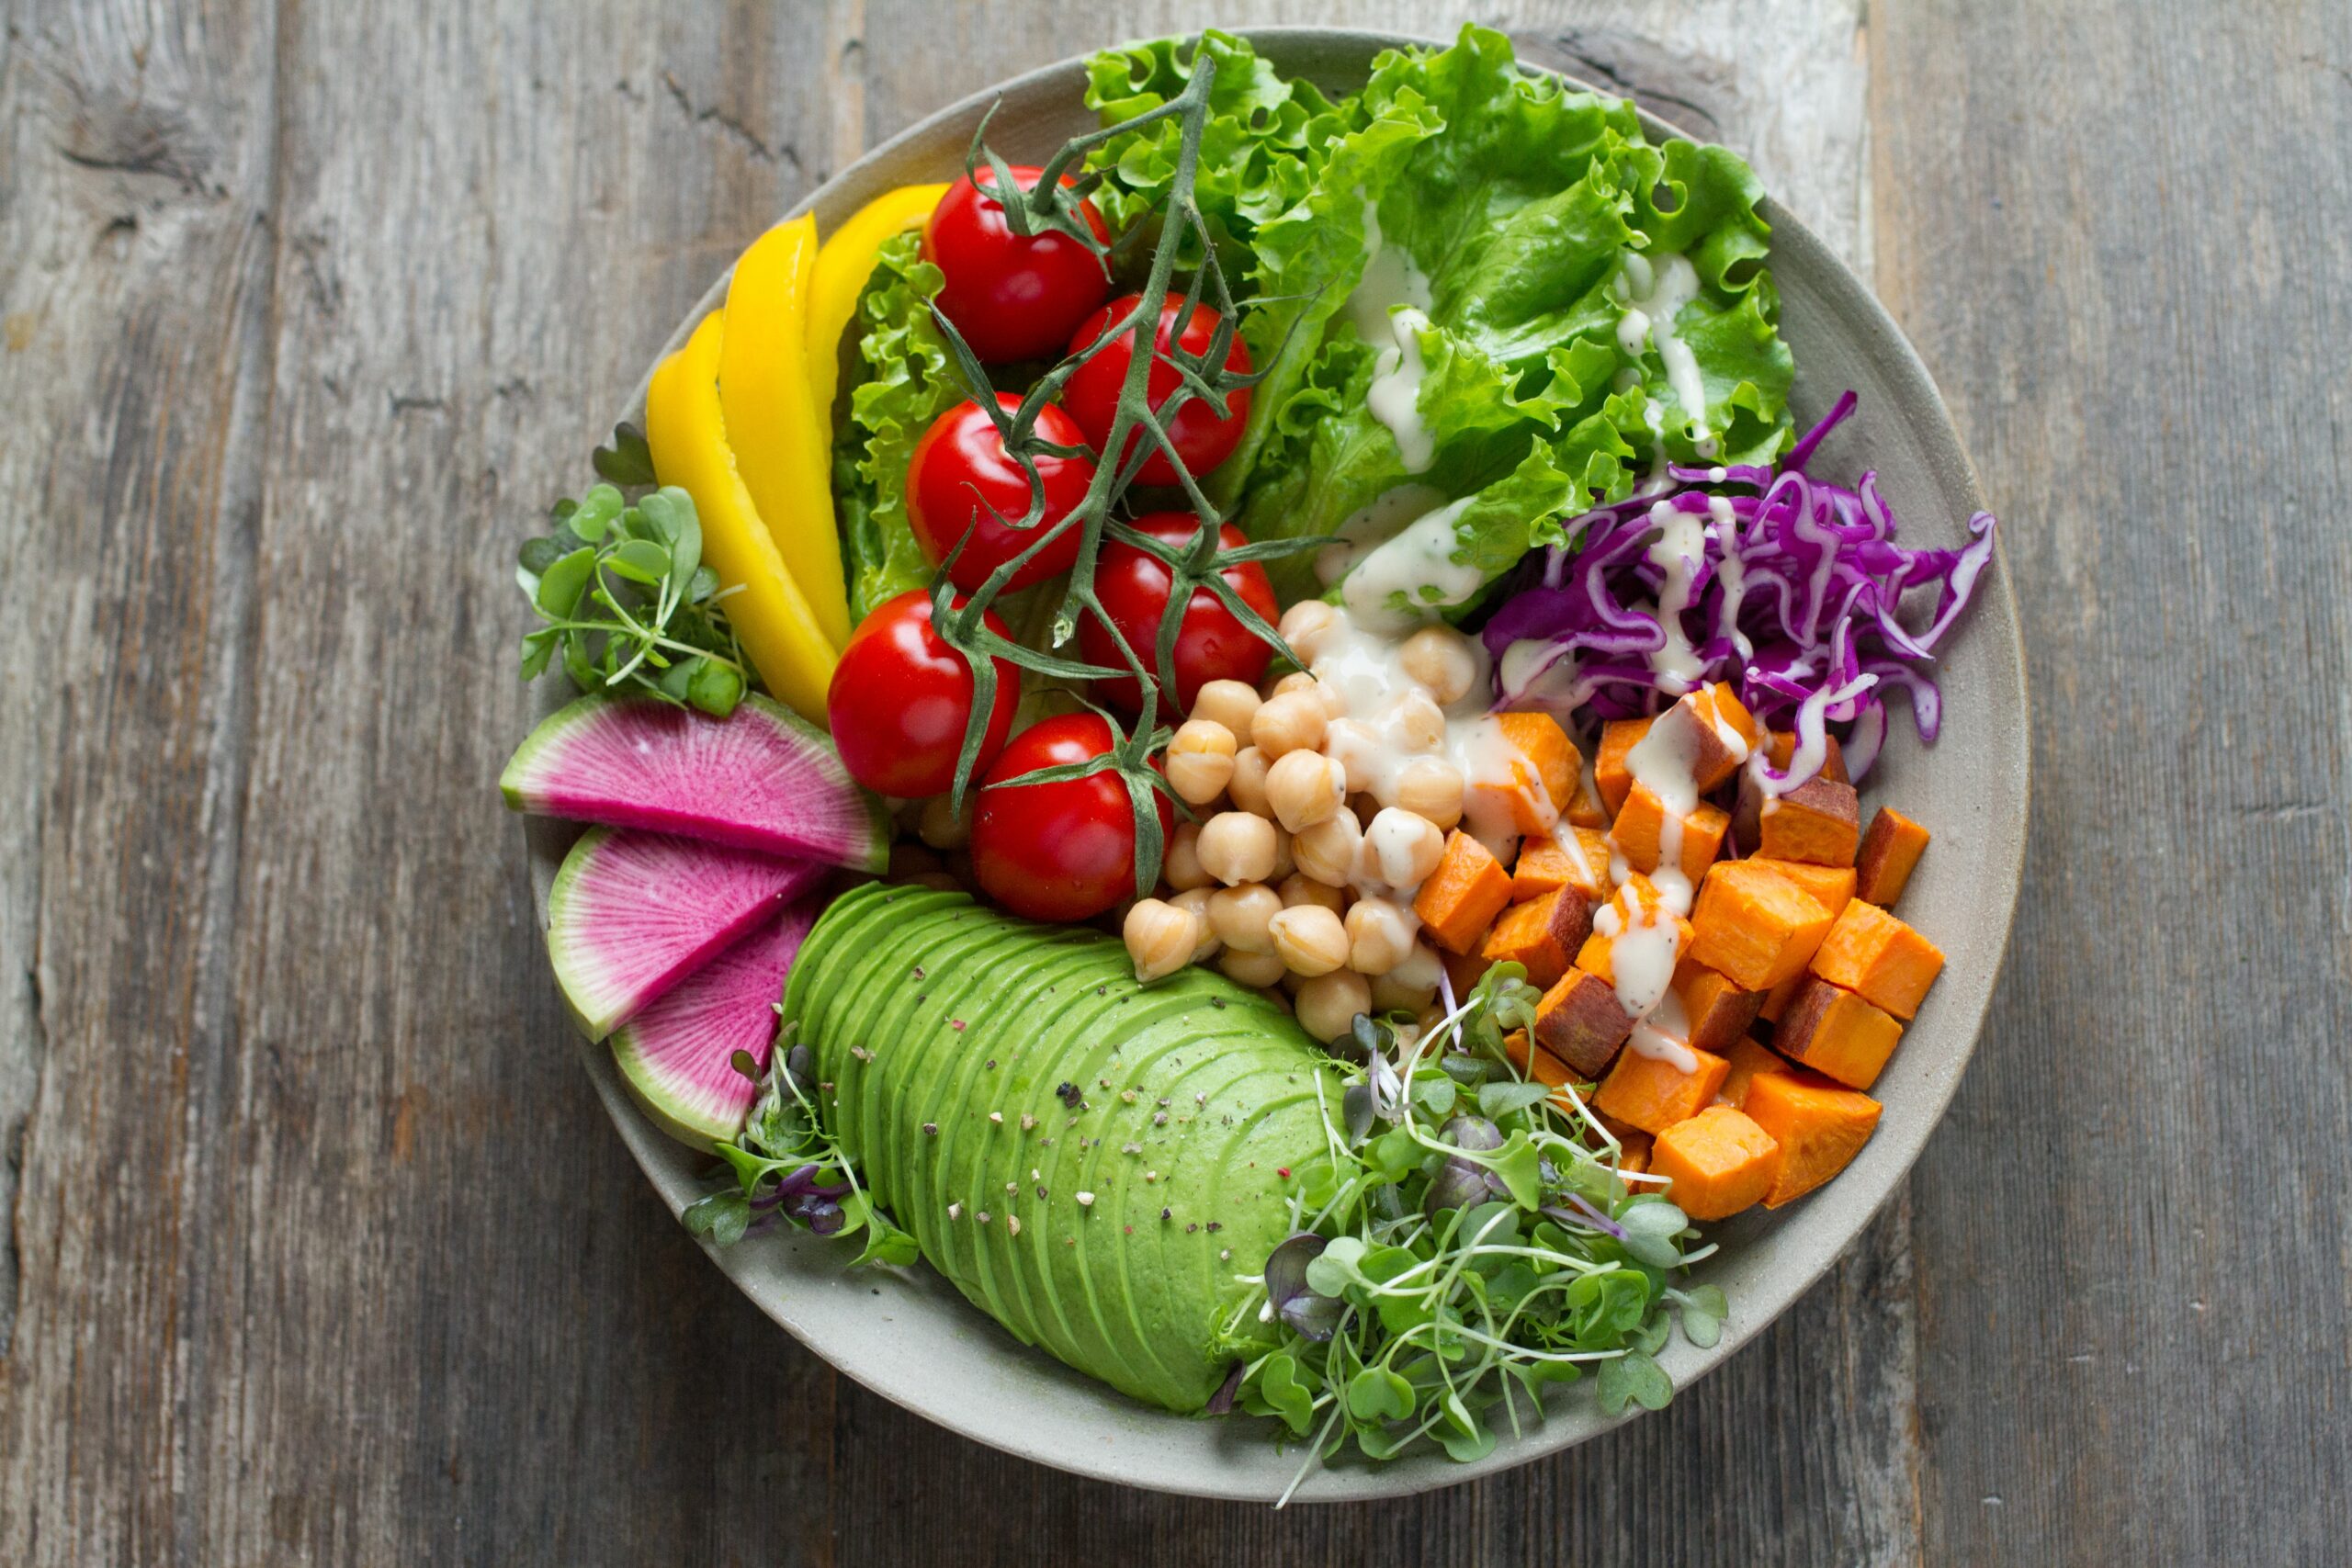 15 Simple Vegan Recipes Everyone Needs To Know